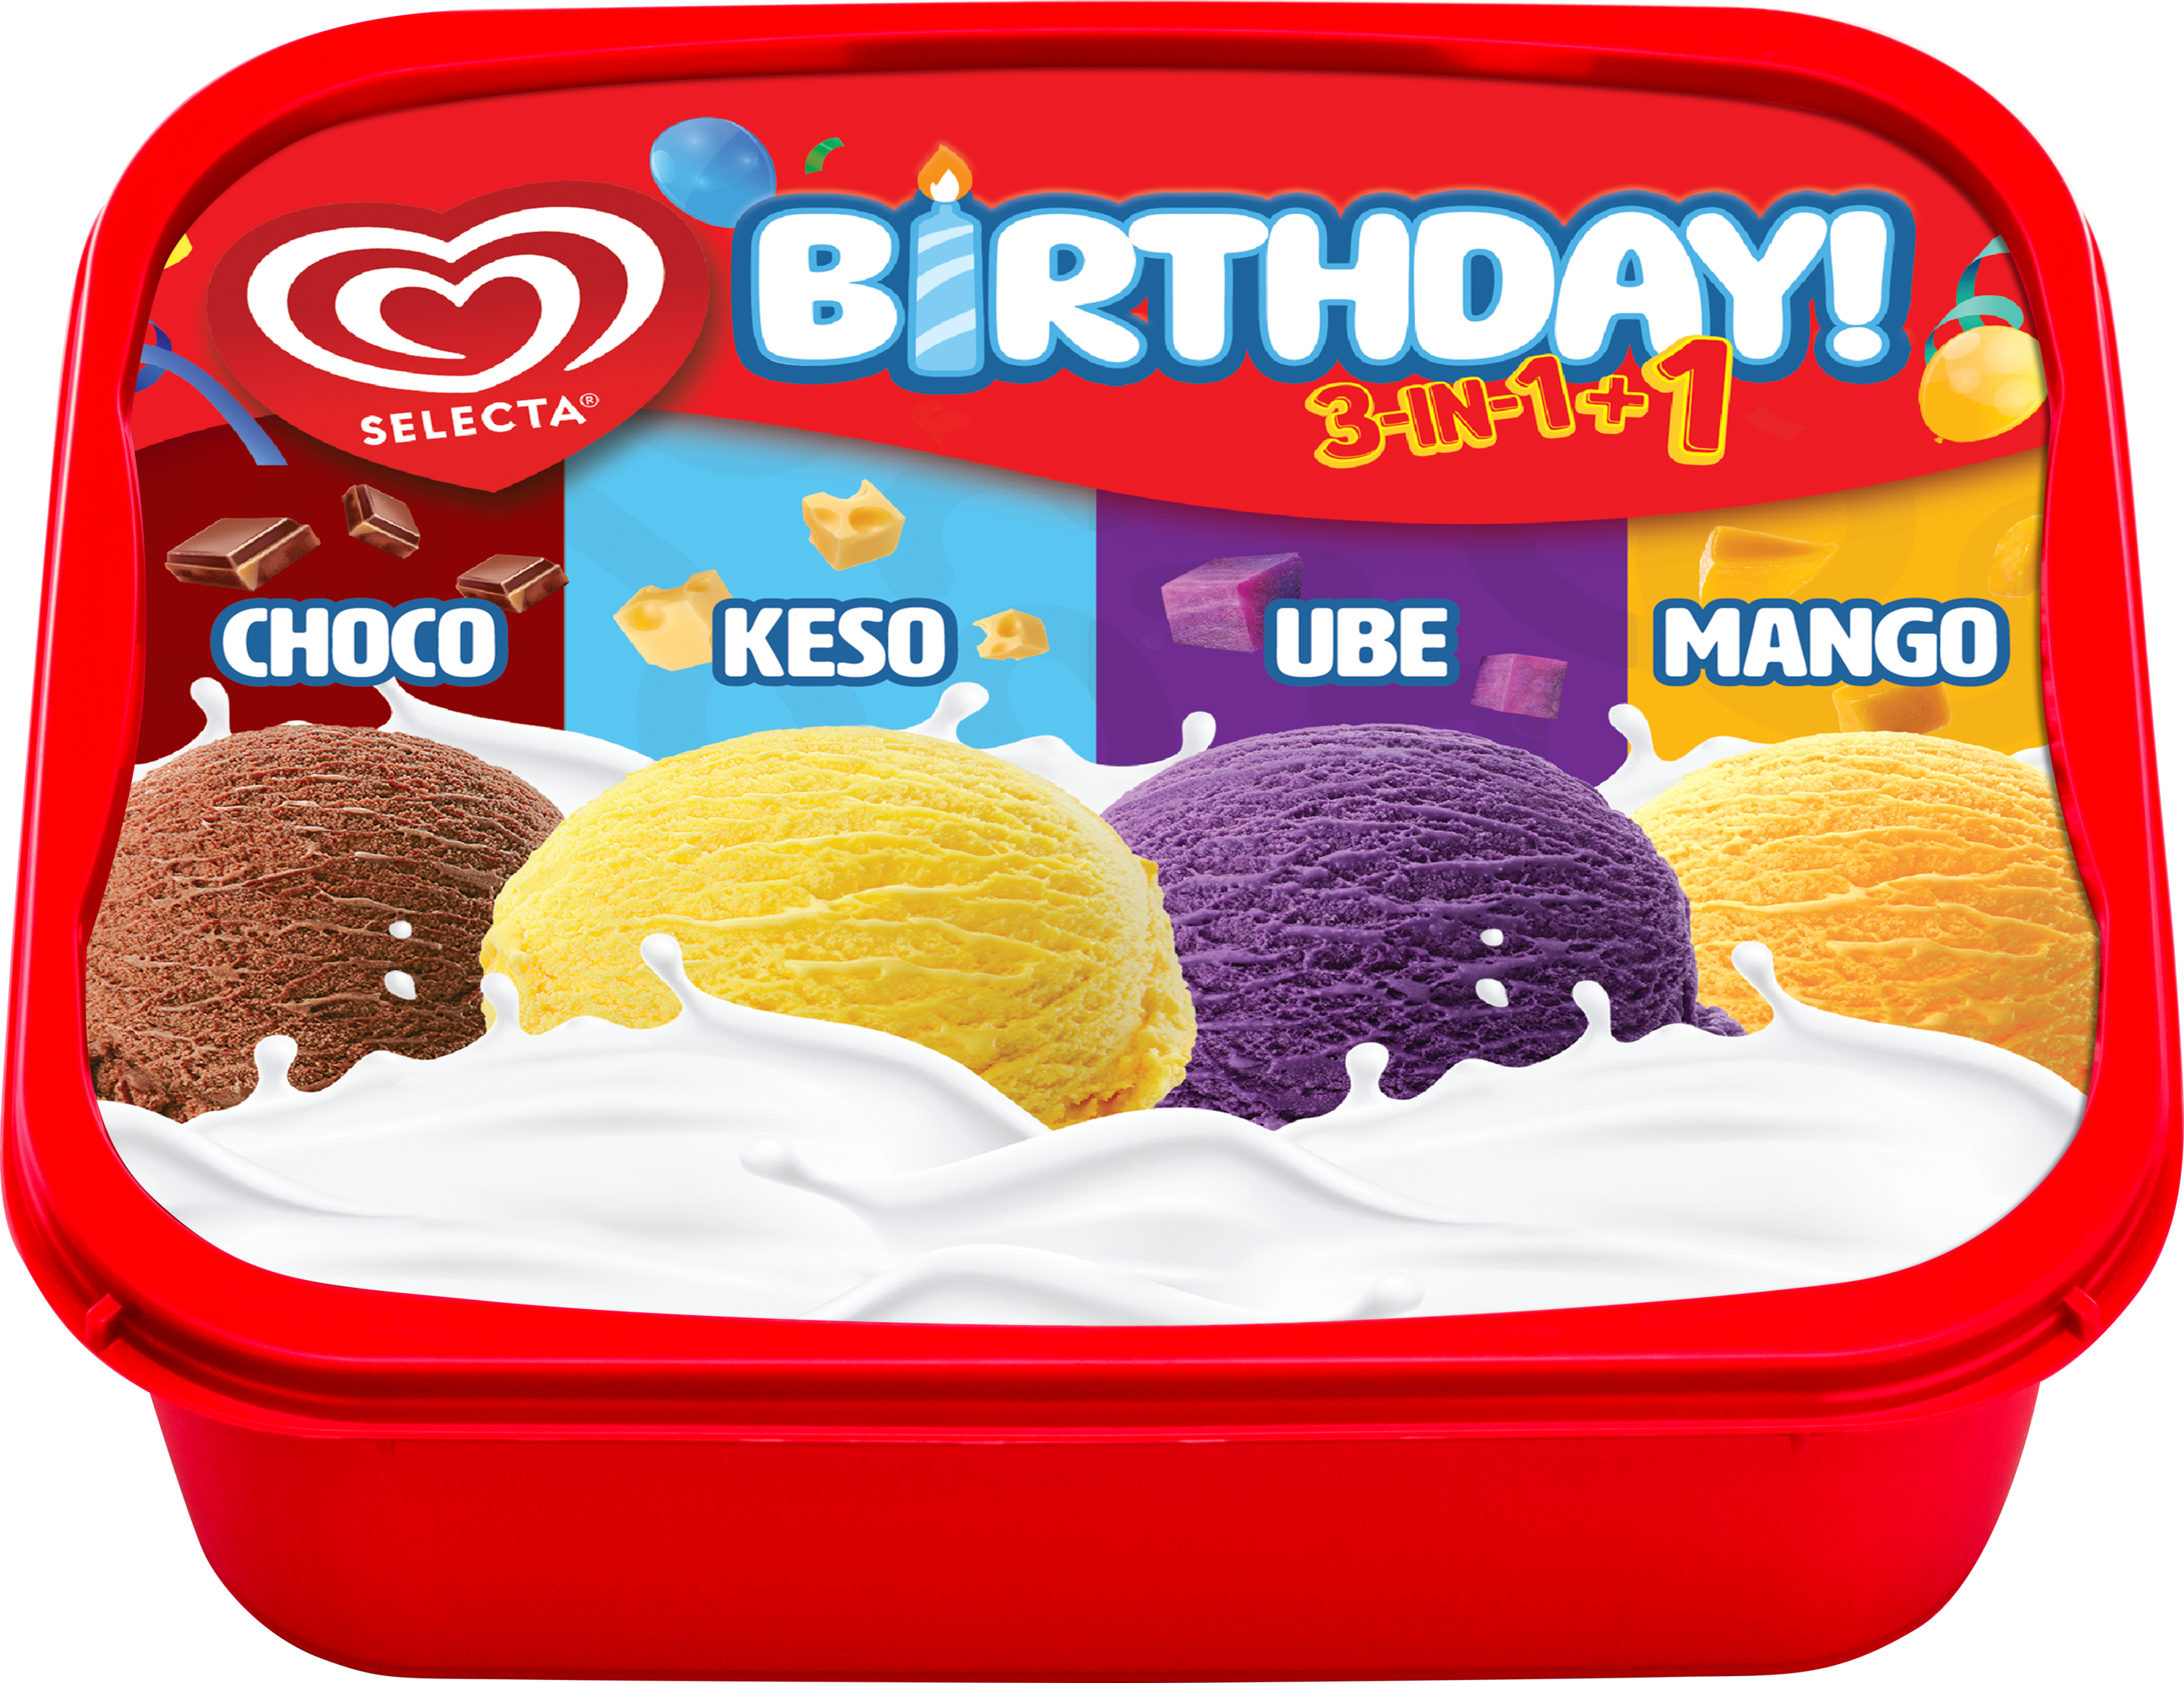 Selecta Creamdae 3in1+1 Choco-Keso-Ube-Mango